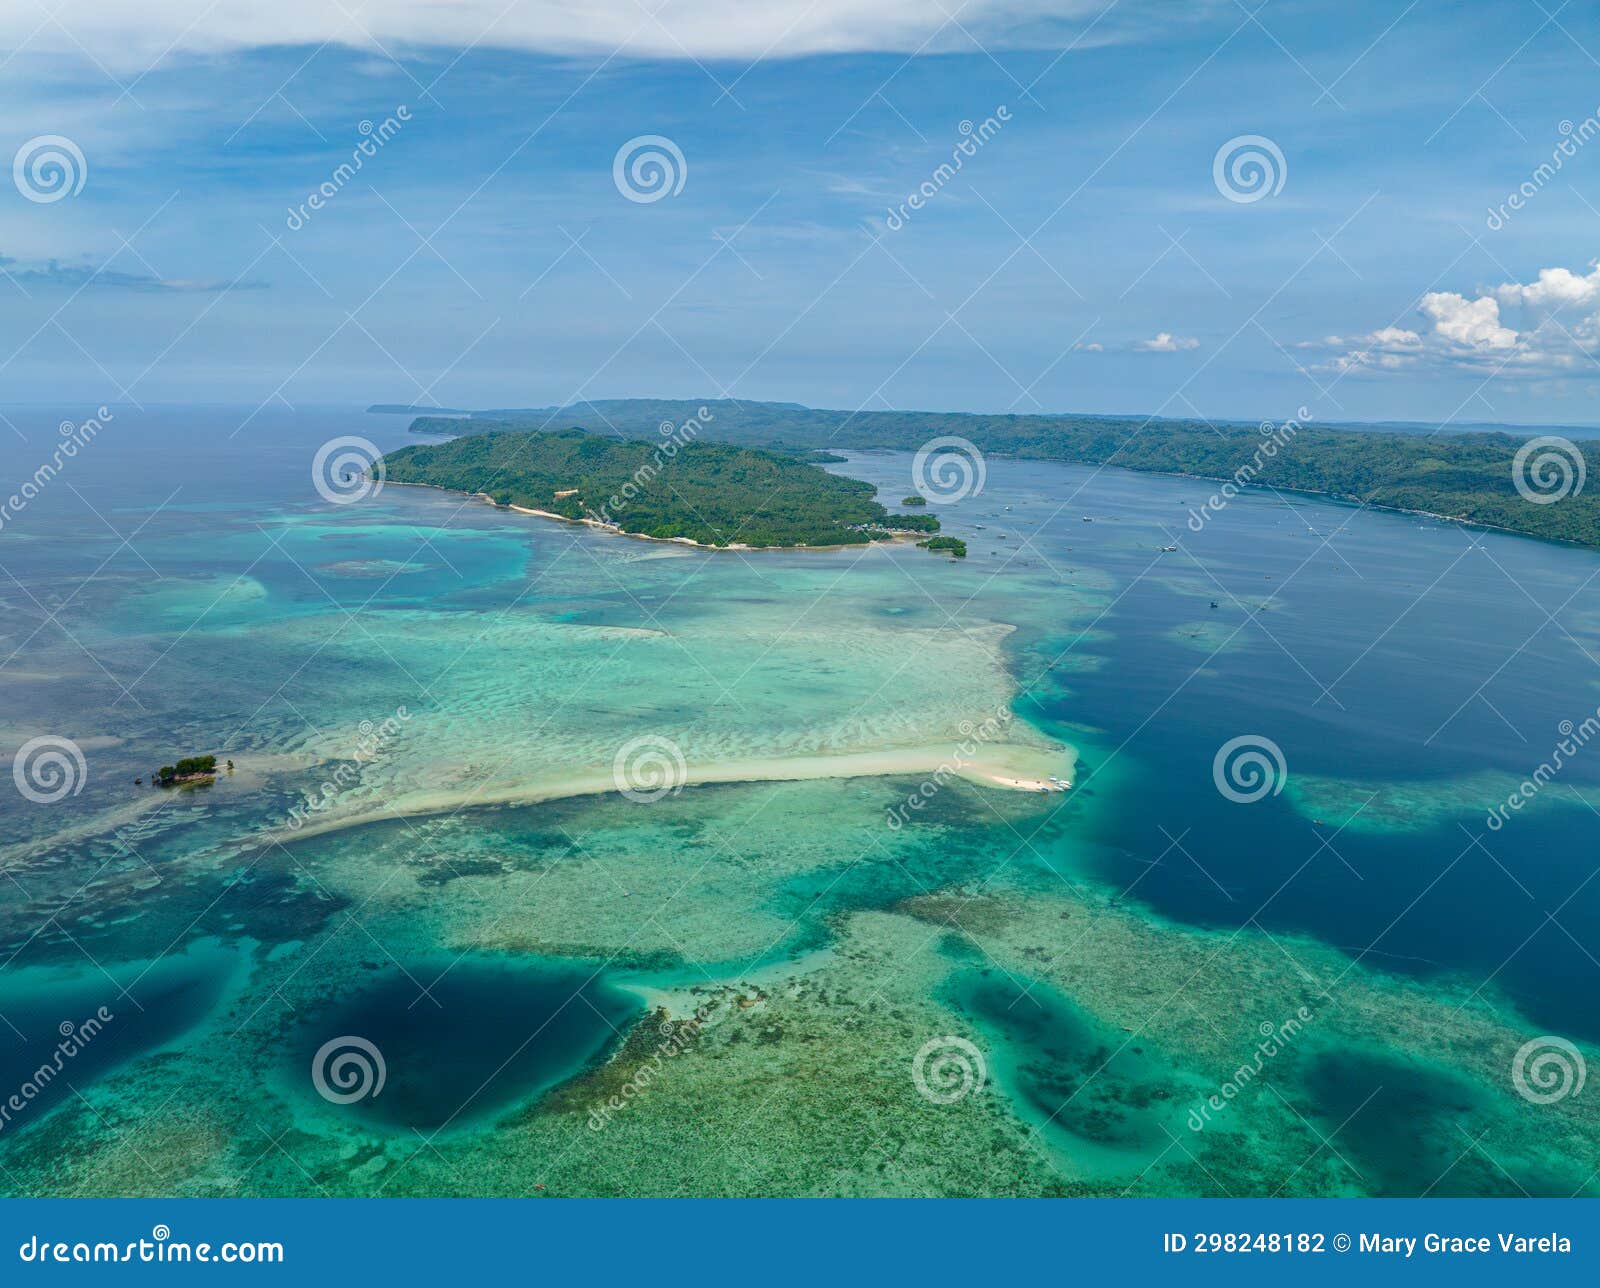 tropical islands in barobo, surigao del sur. philippines.